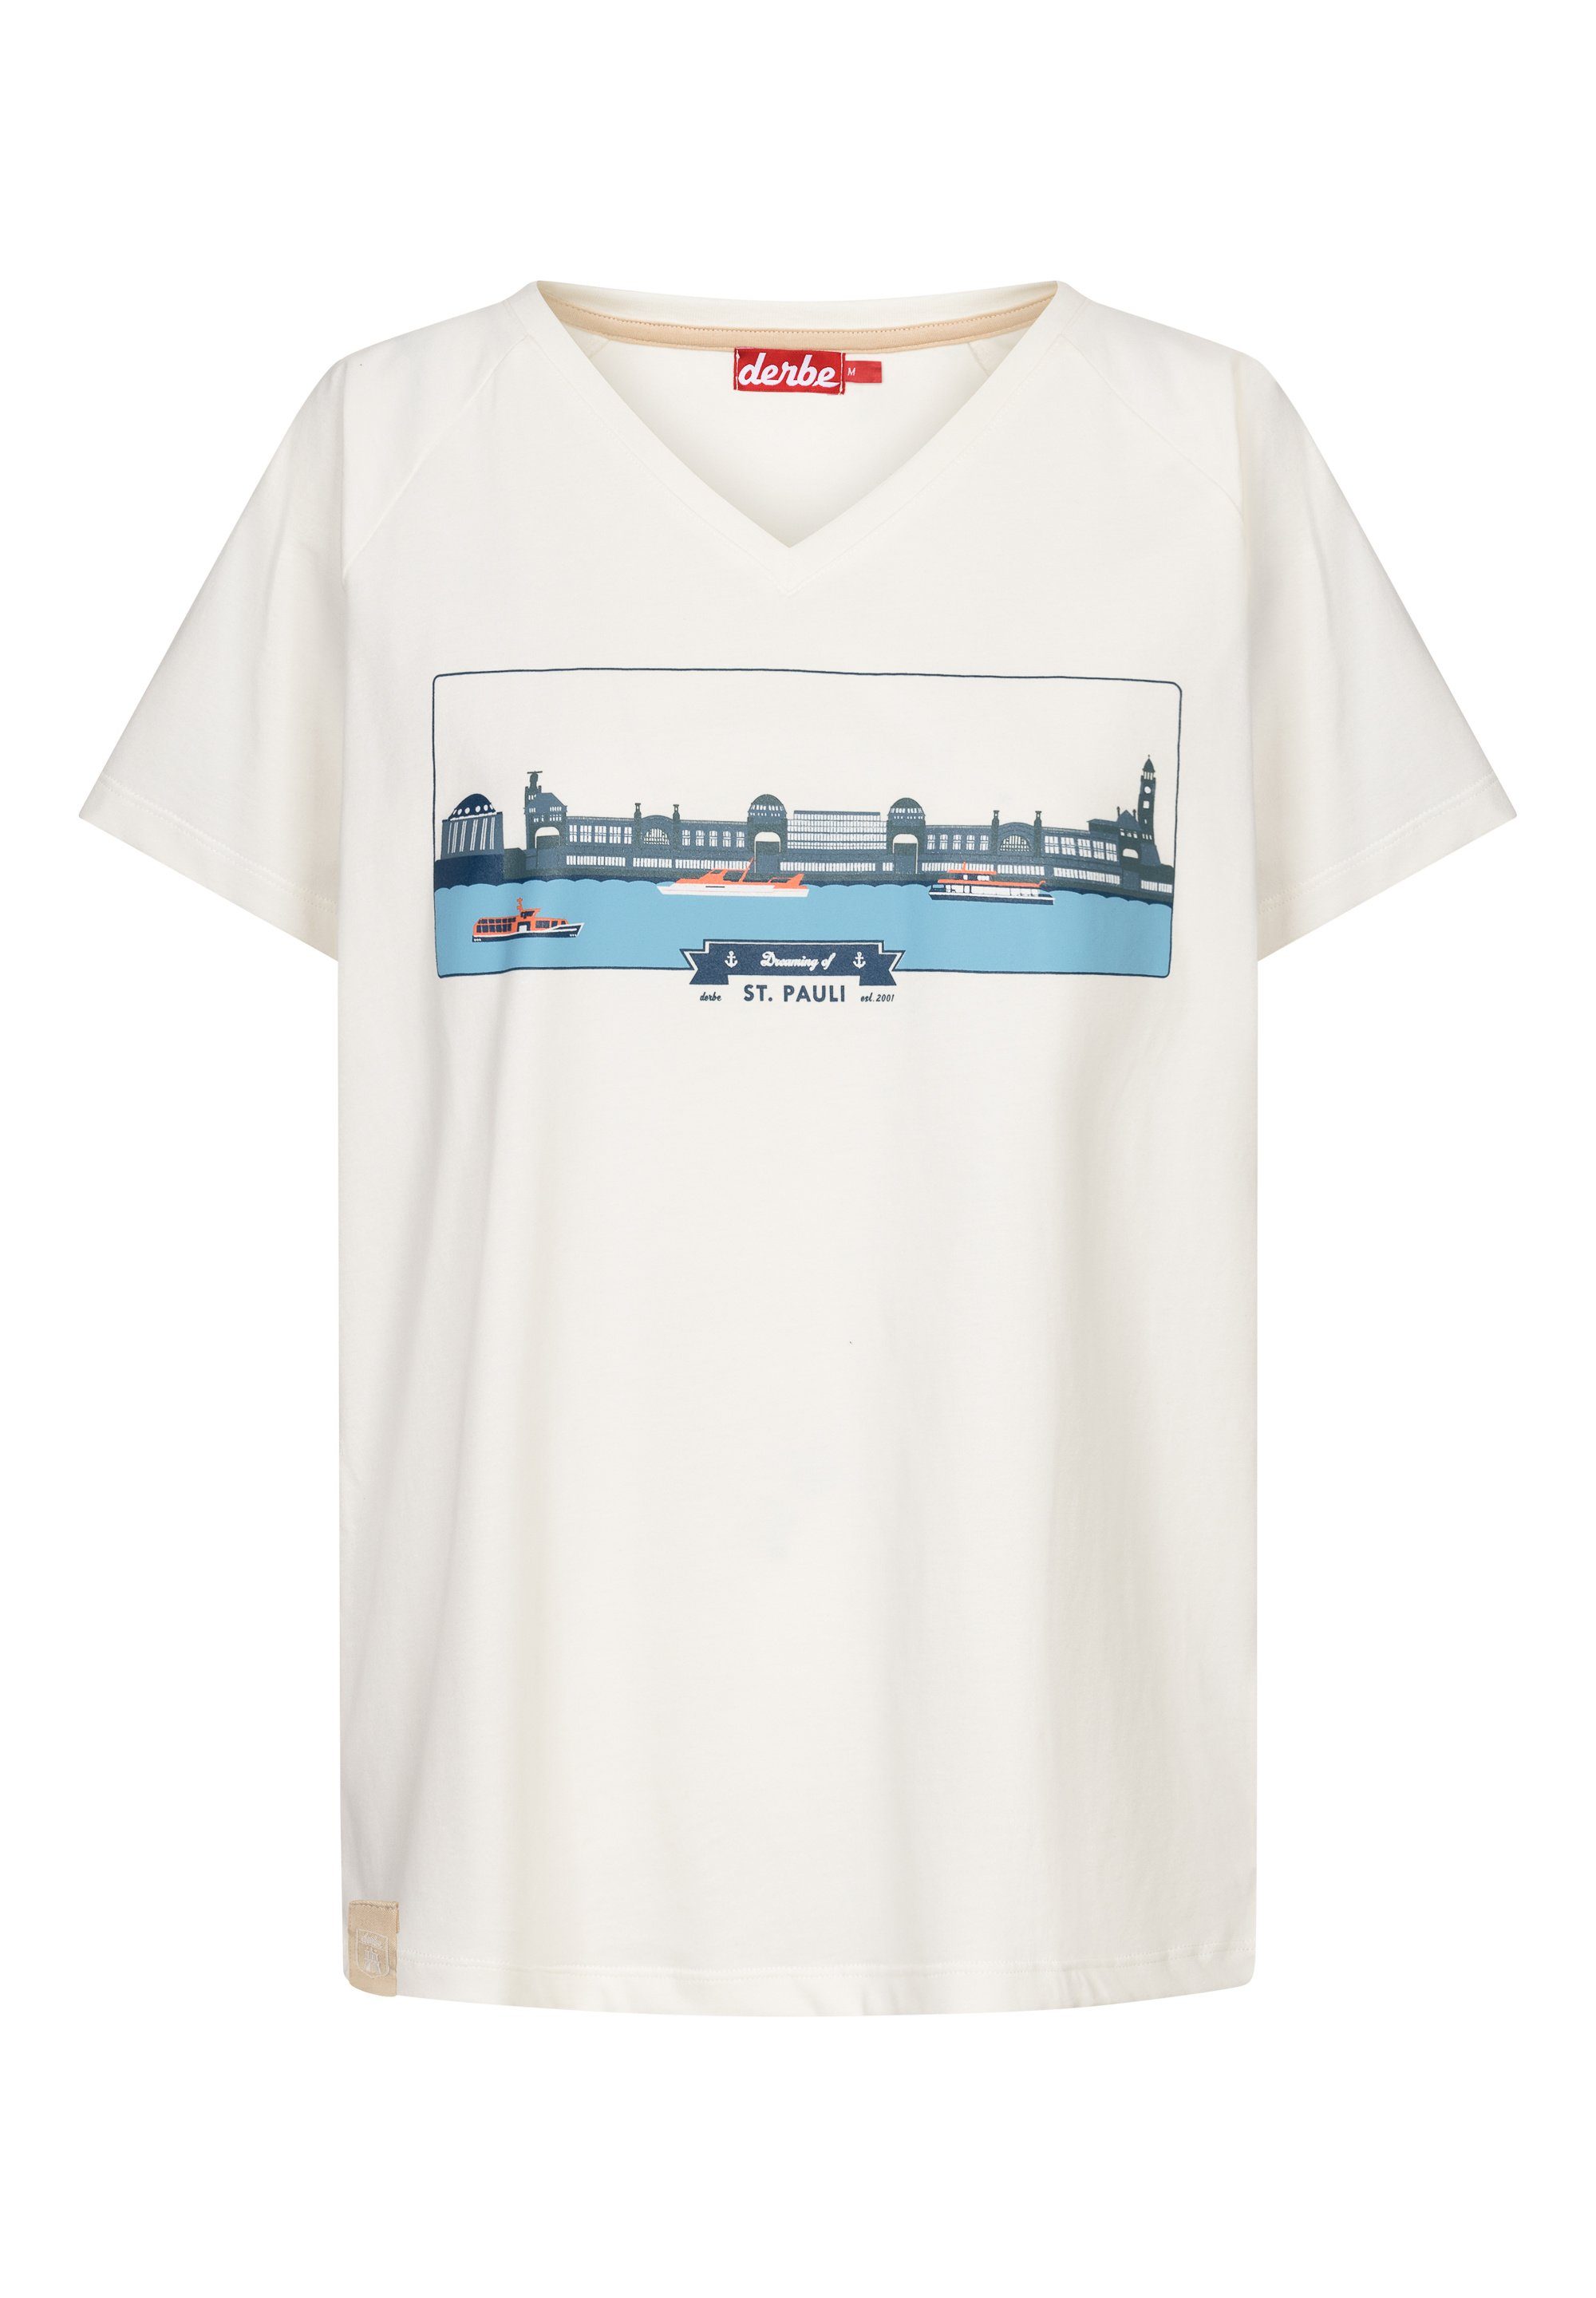 Derbe T-Shirt Landungsbrücken Made in Portugal, Baumwolle